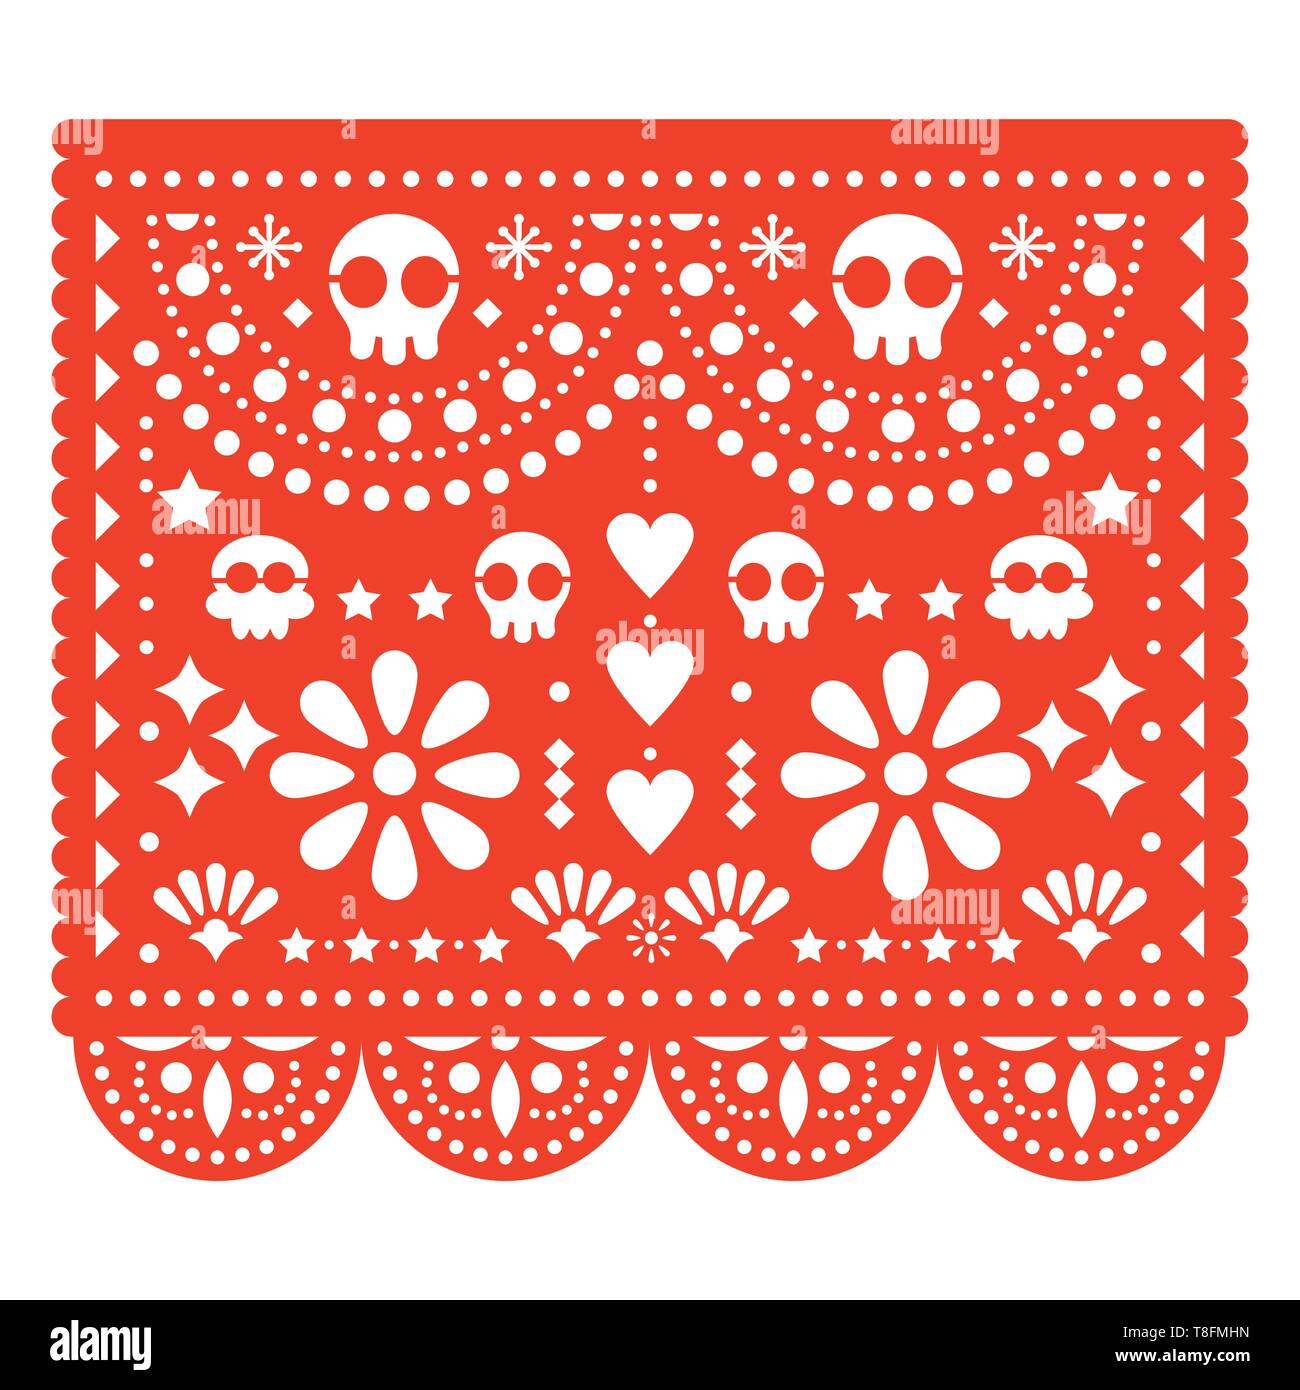 Skulls papel picado, vecteur conception papier mexicain cut out pattern - Dia de los Muertos, le Jour des Morts Illustration de Vecteur